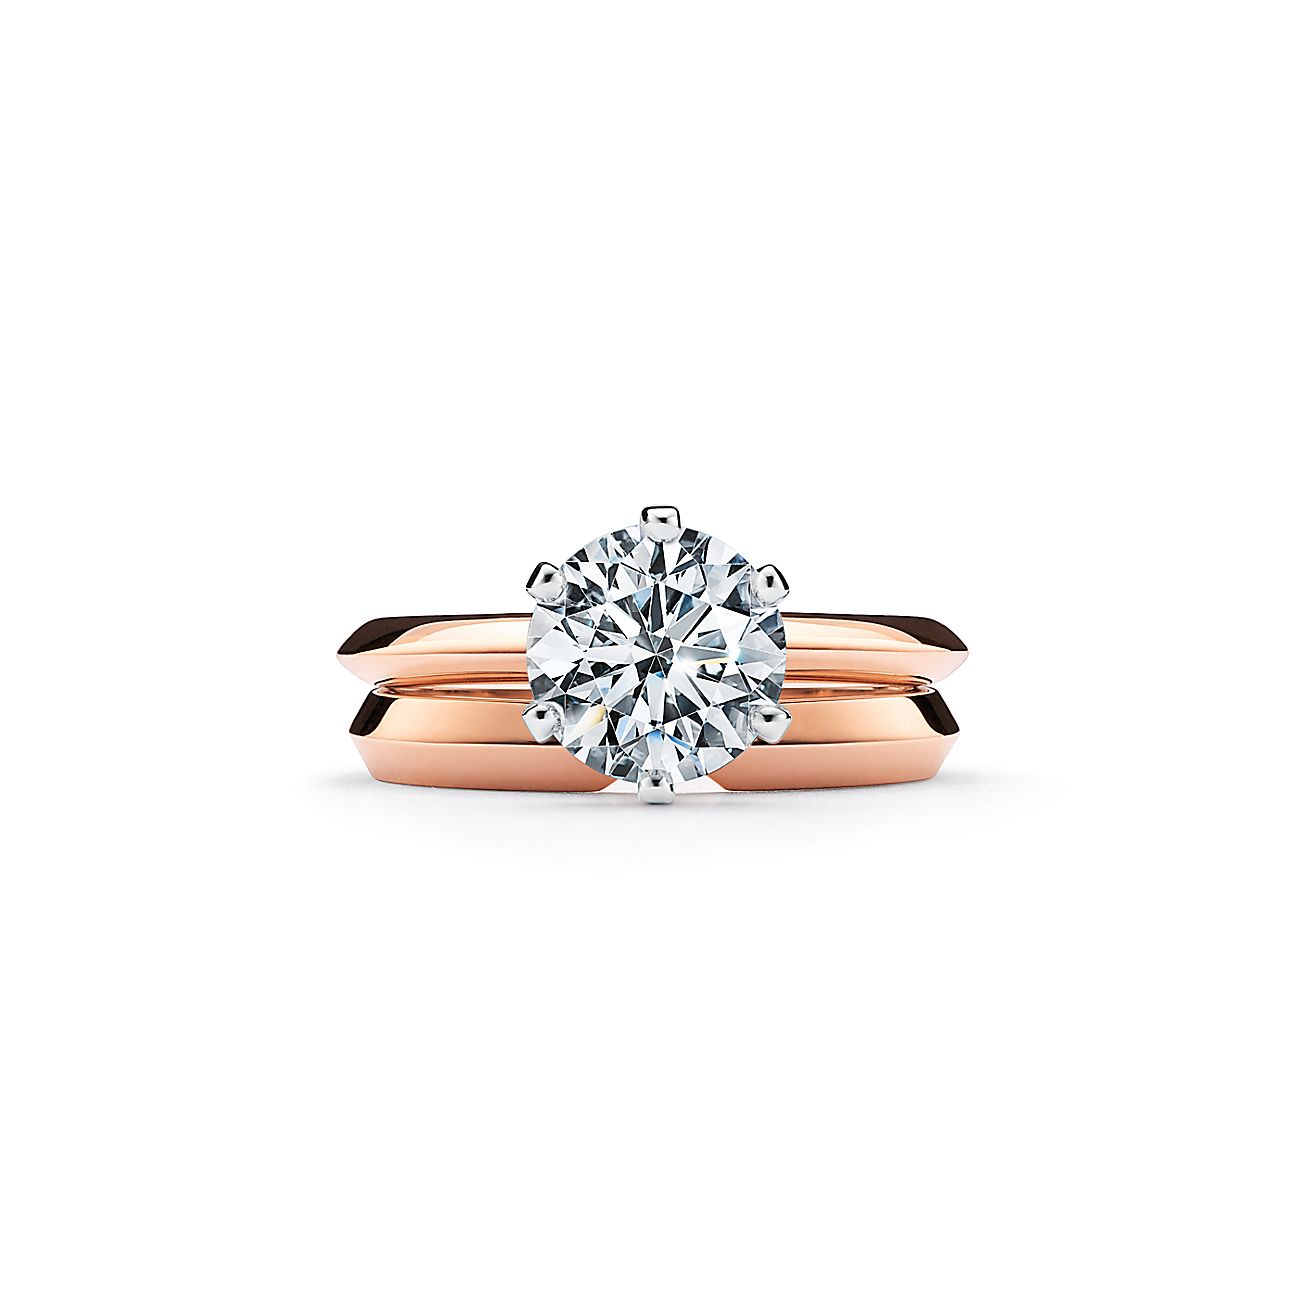 Tiffany® Setting en oro rosa de 18k: el anillo compromiso más icónico. | Tiffany & Co.